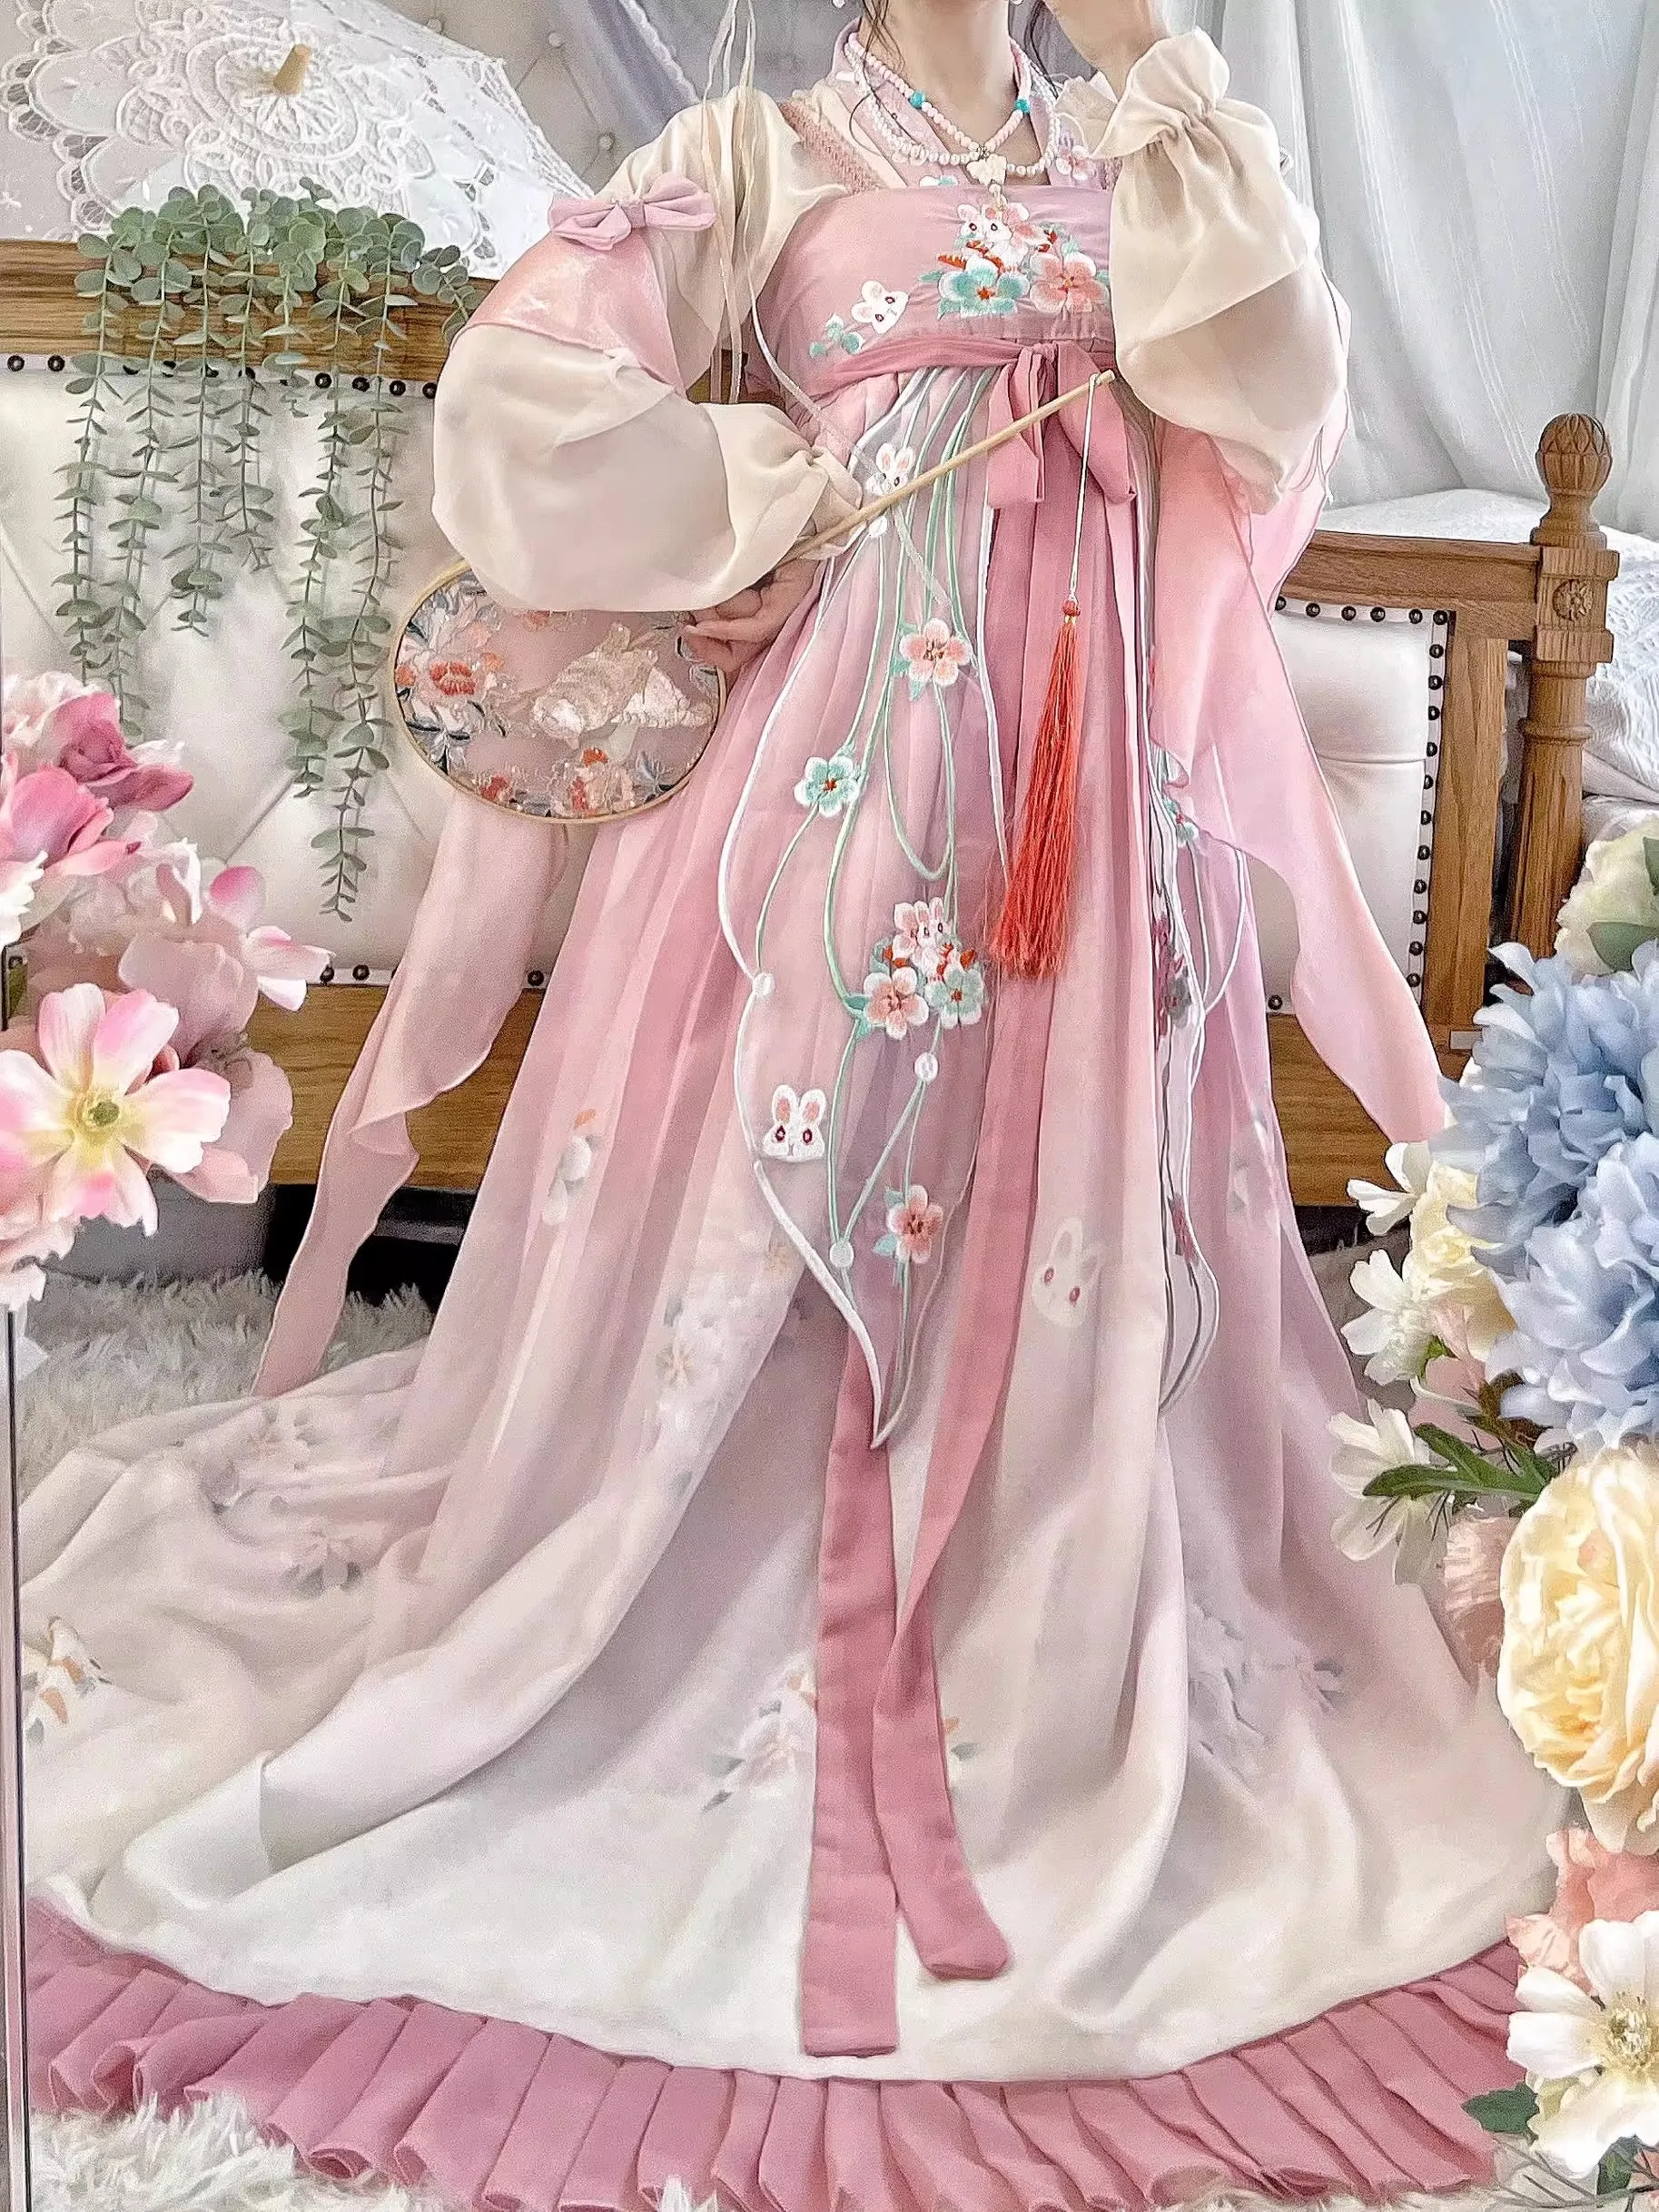 Robe Hanfu chinoise pour femmes, ensembles Hanfu brodés traditionnels des Prairies, costume de carnaval nickel é, robe de danse Hanfu rose, nouveau cosplay